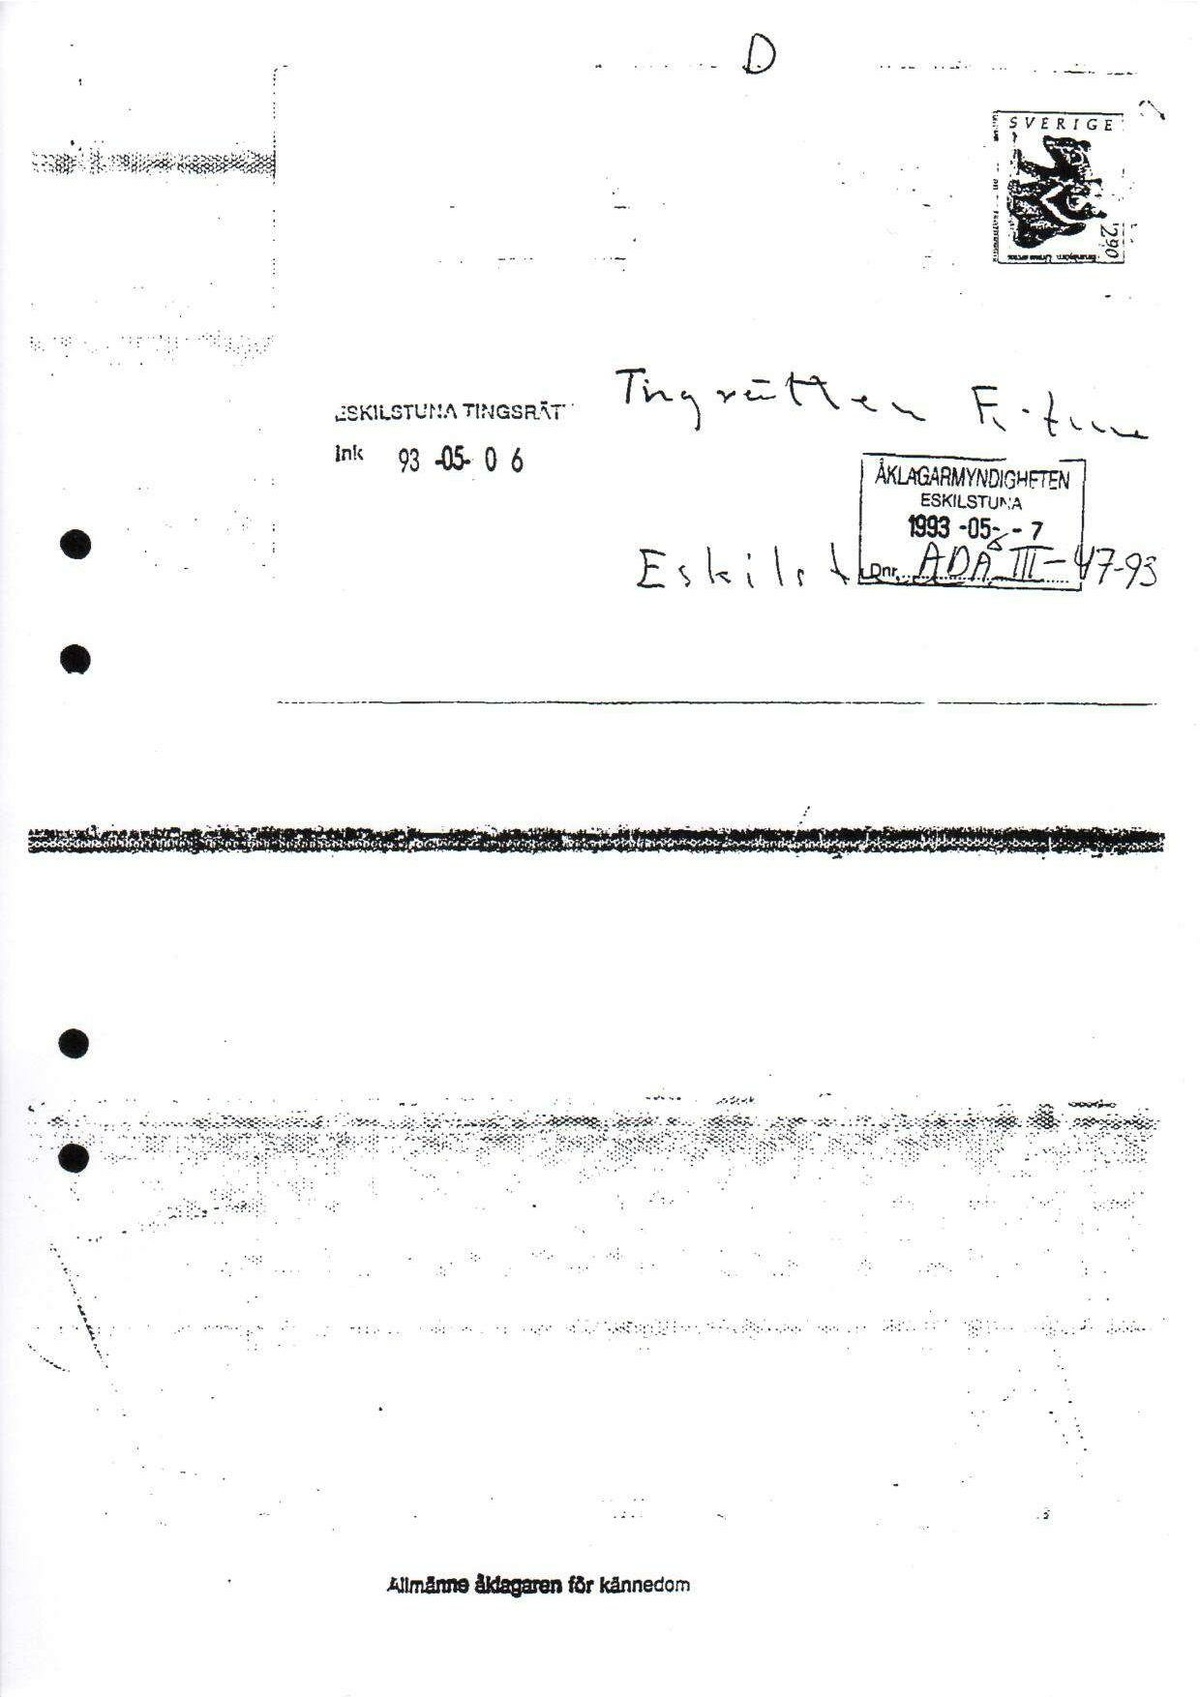 Pol-1993-05-10 D15077-00 Erkännanden Palmemordet.pdf